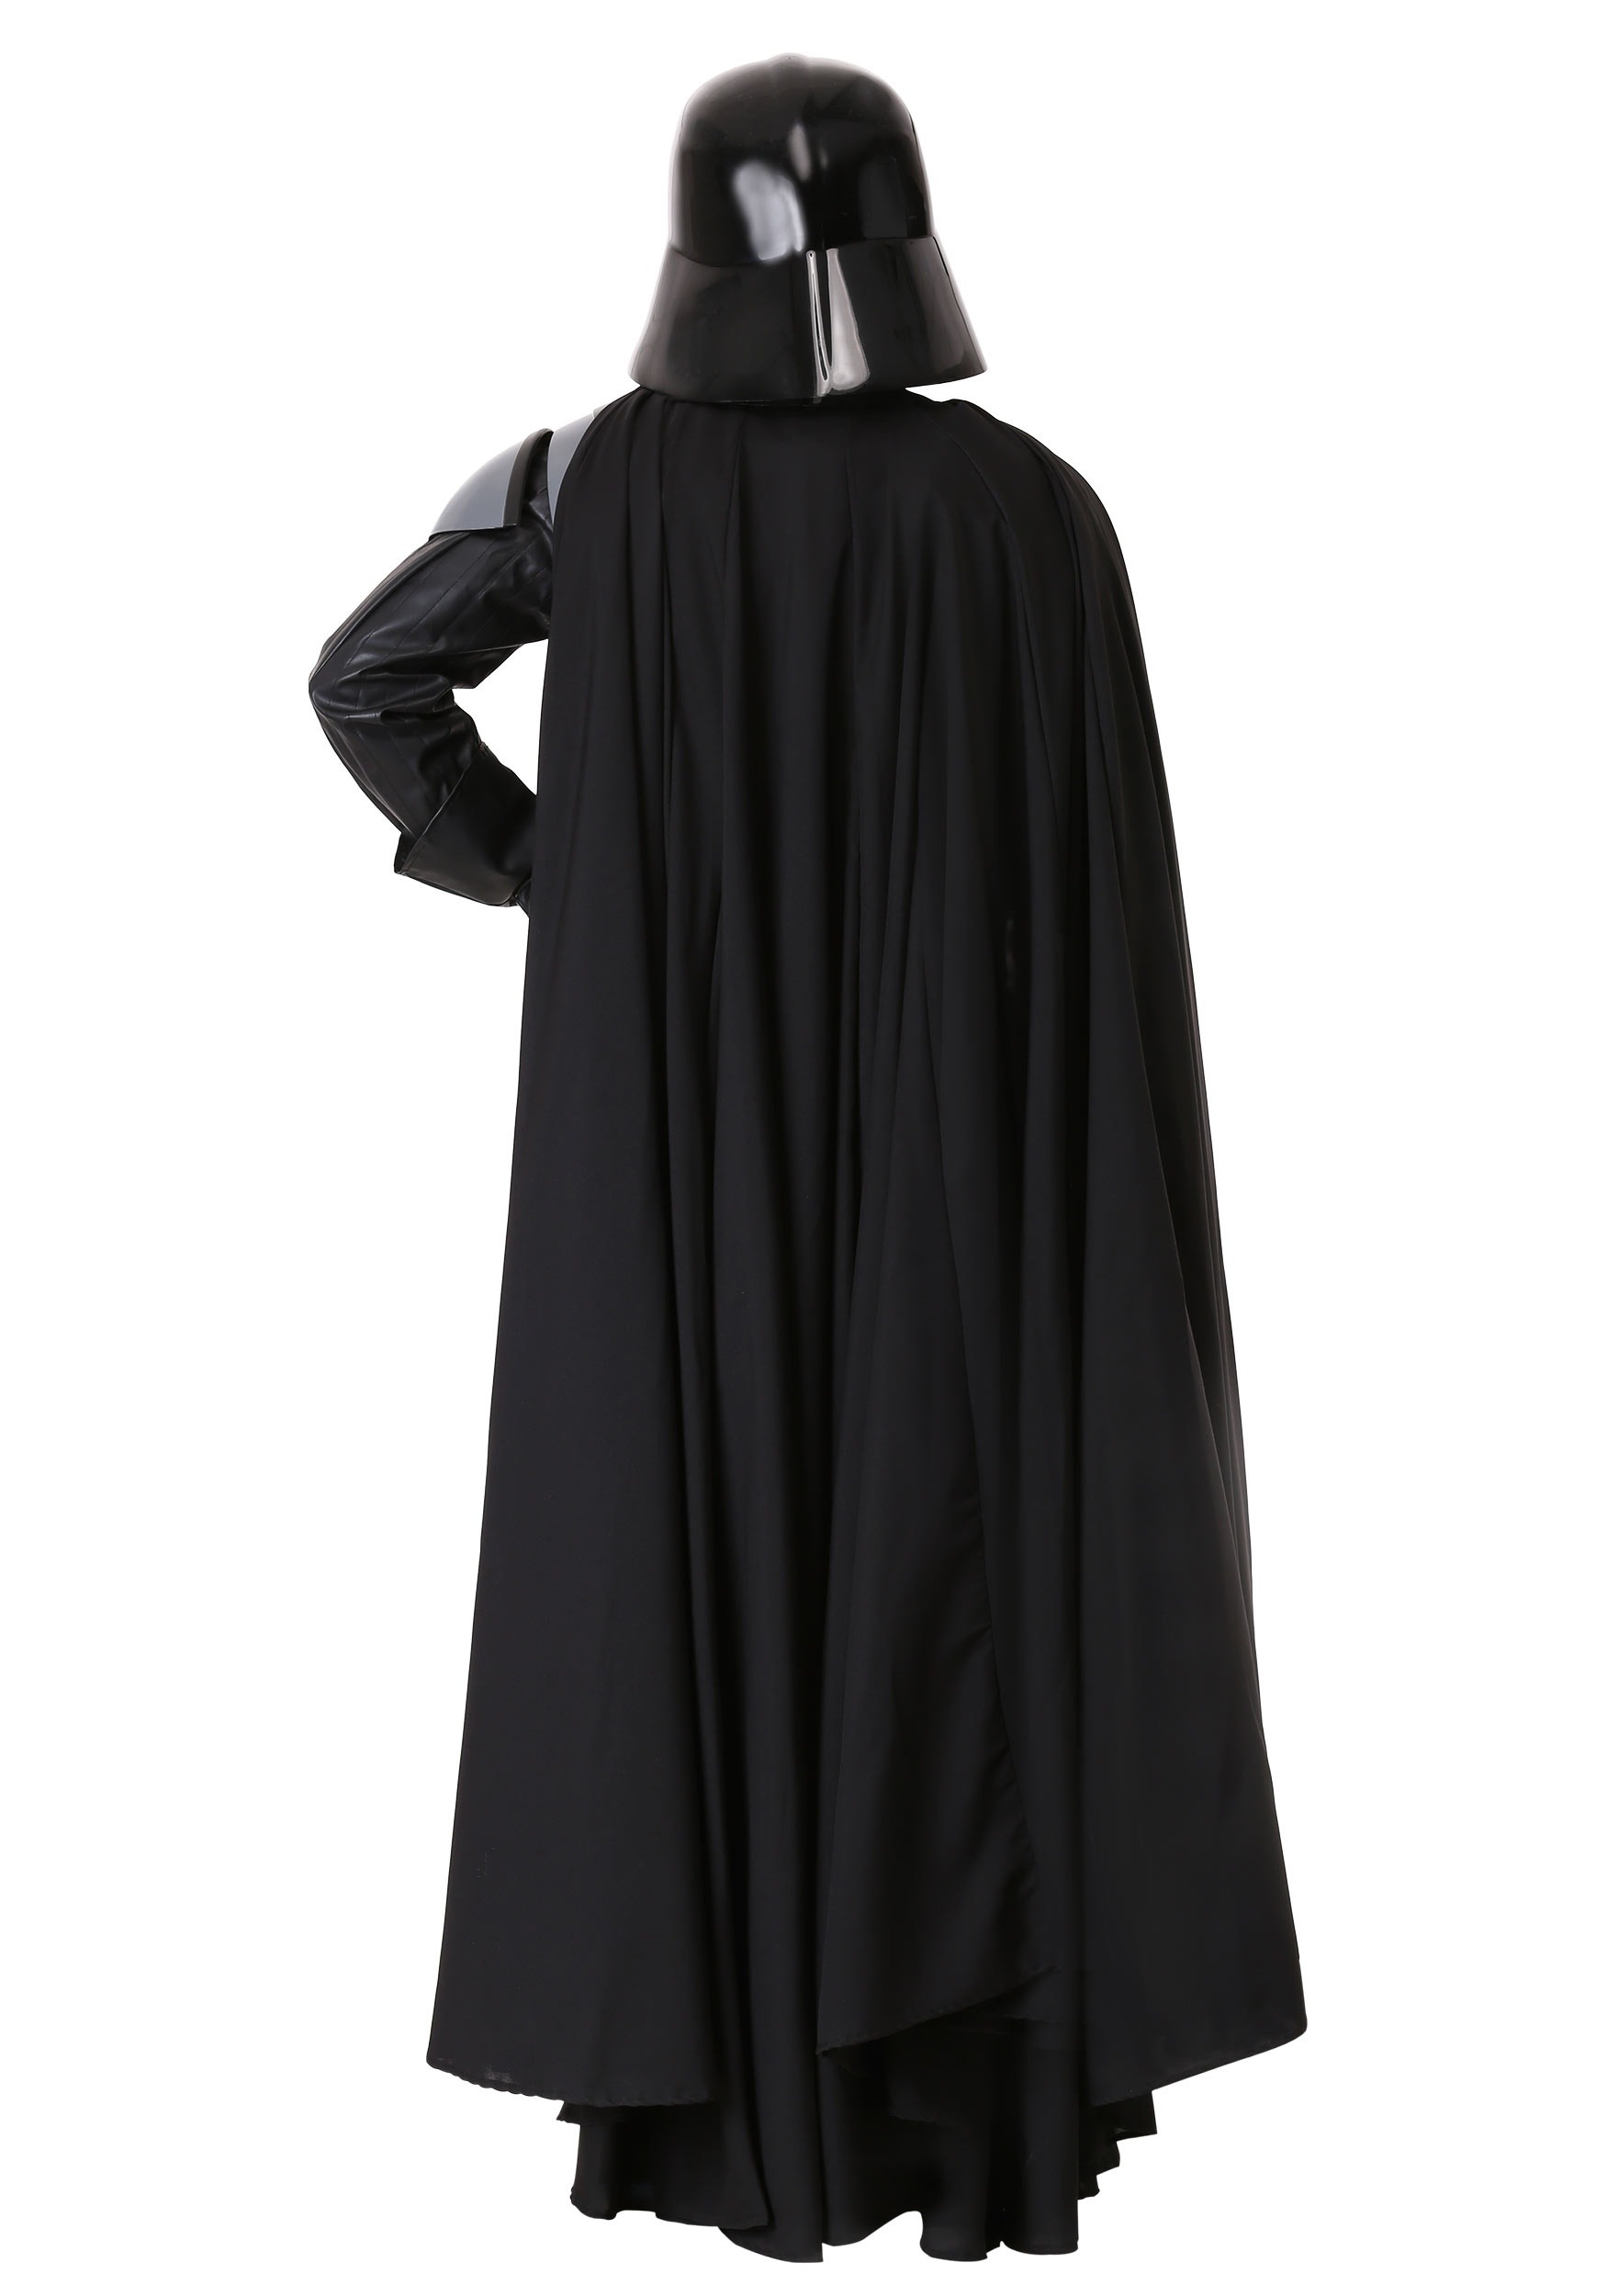 Delgado autopista violación Disfraz auténtico de Darth Vader